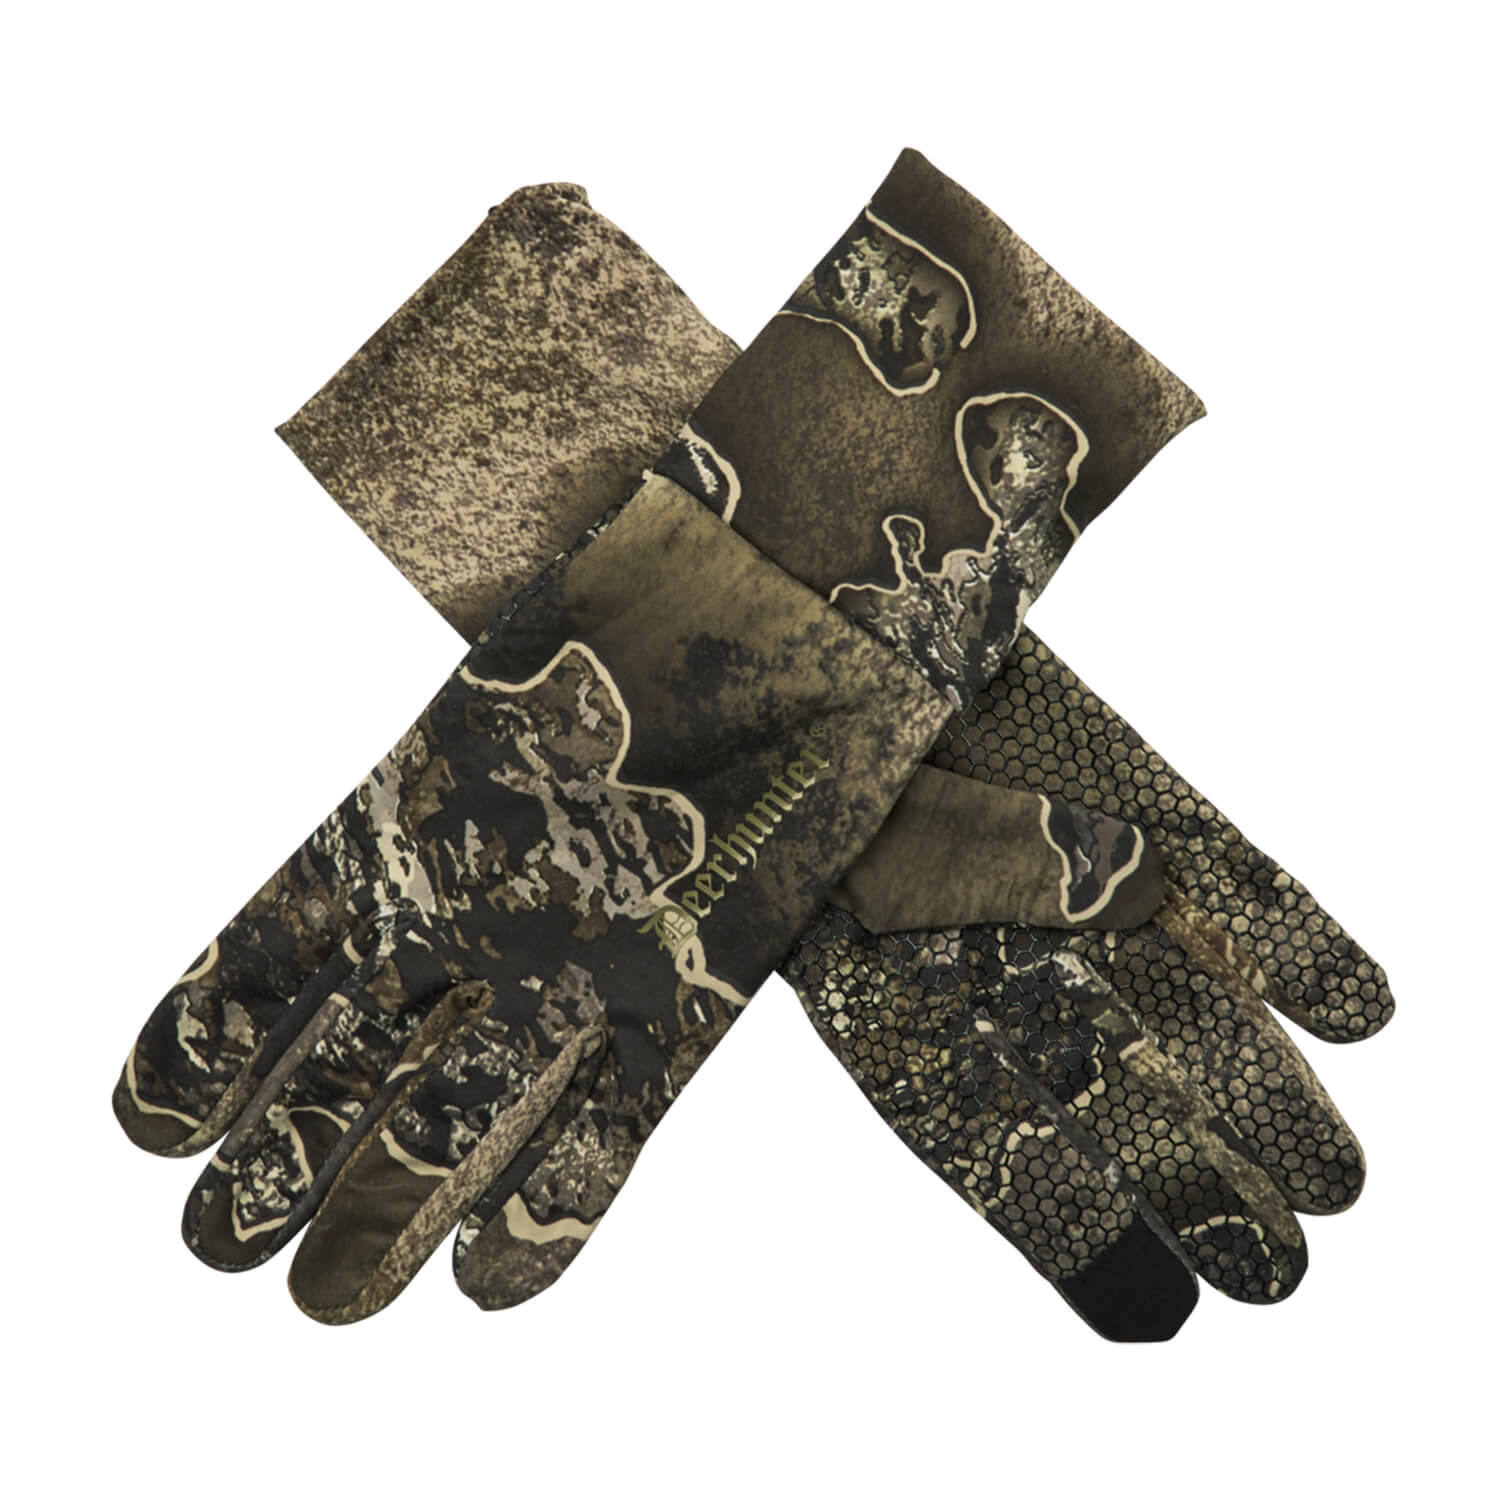  Deerhunter Handschoenen Excape (Realtree Excape) - Camouflage handschoenen